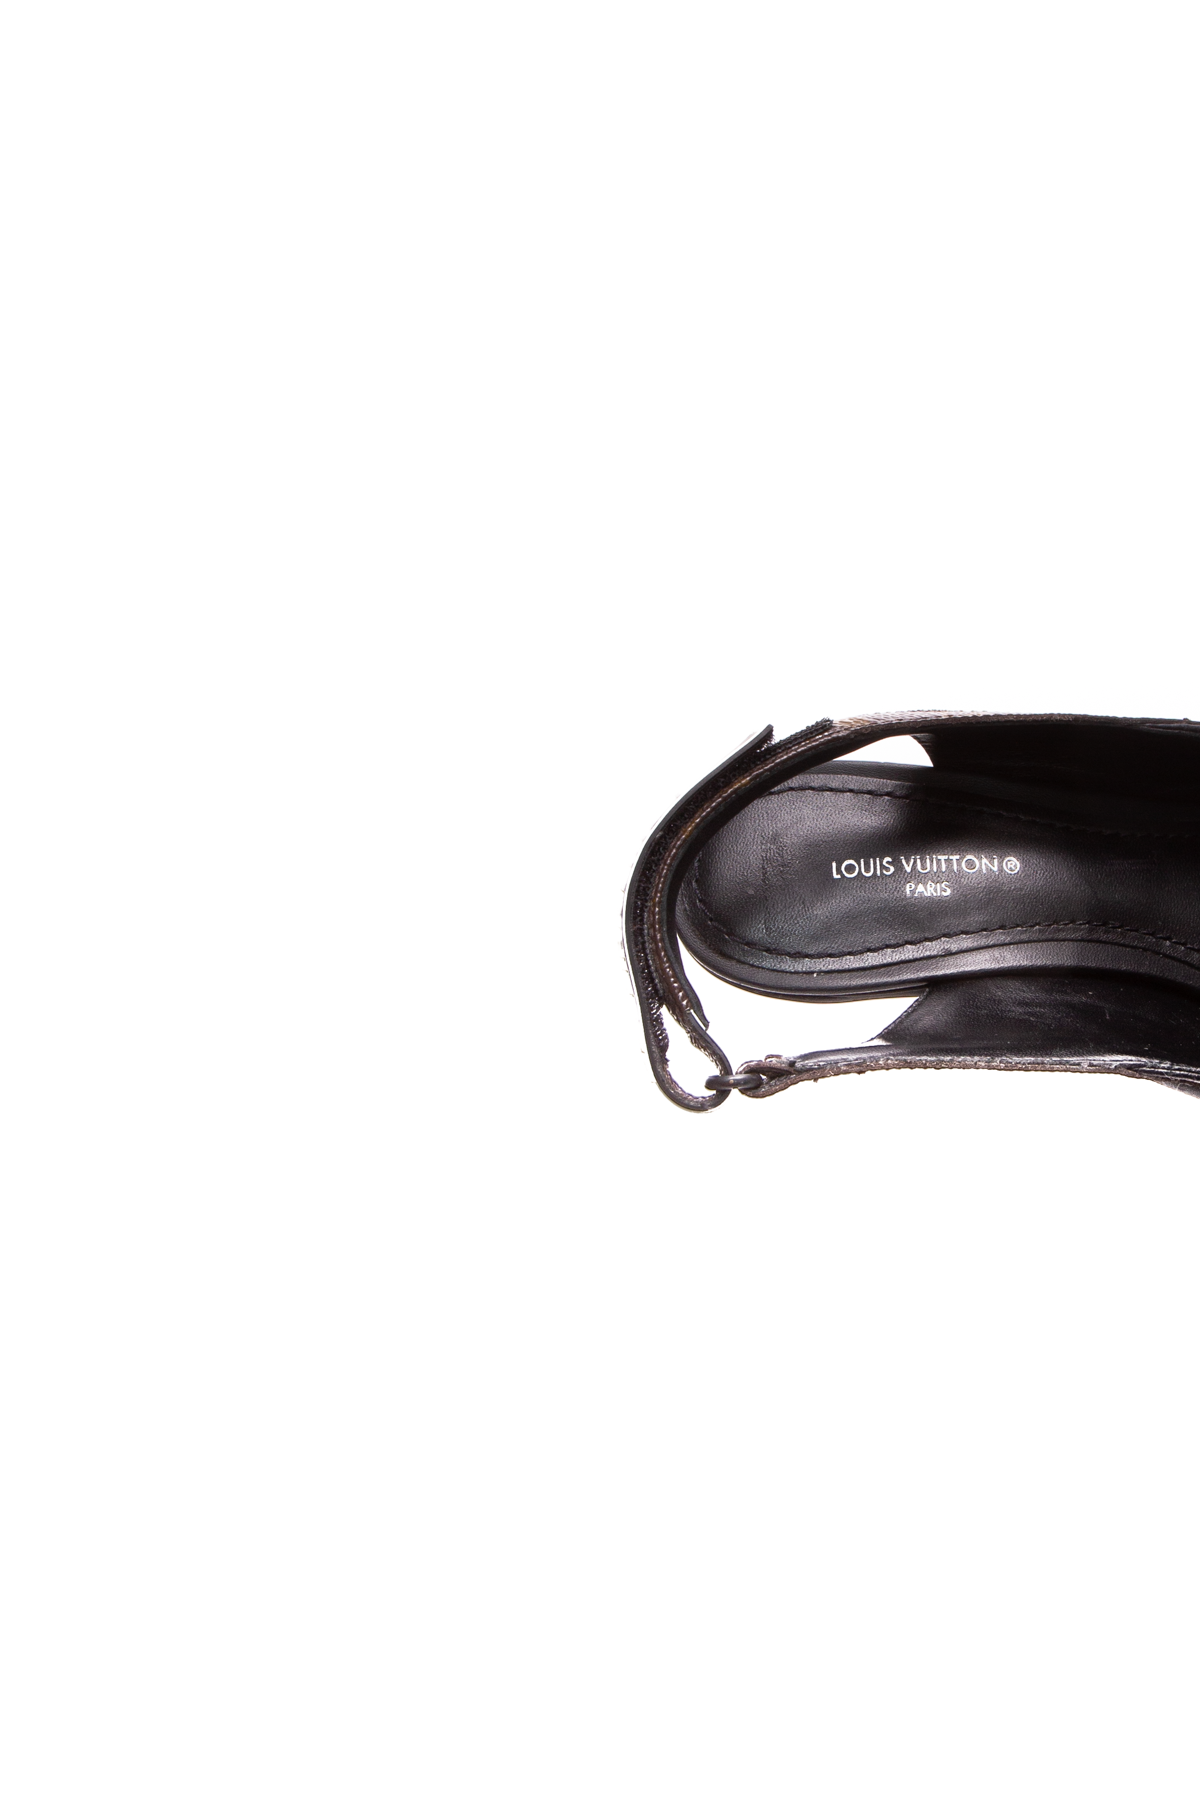 Louis Vuitton Black Leather Slingback Heels Sandals Size 35.5 M